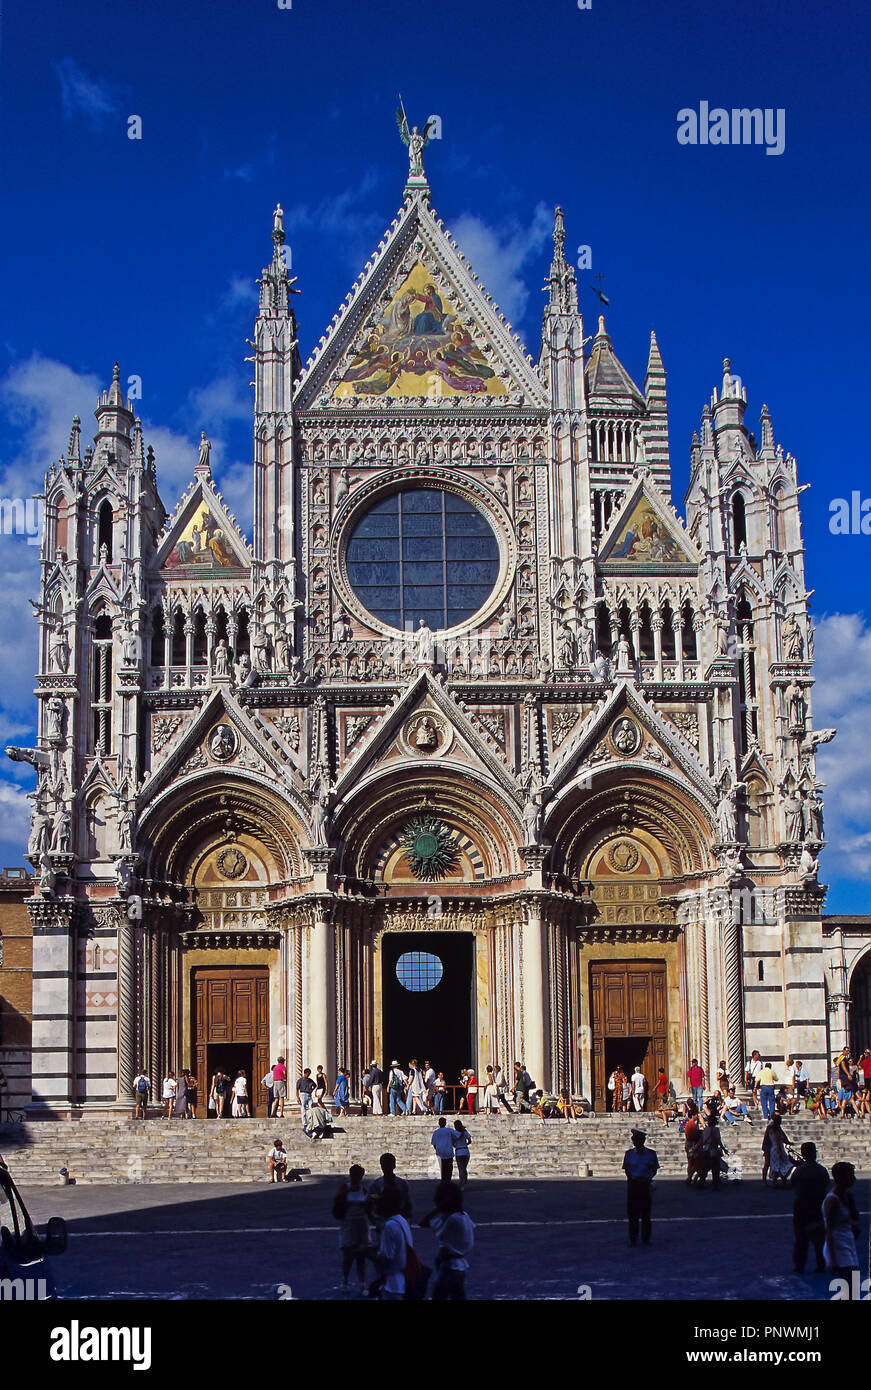 Cathedral of Santa Maria de la Asuncion - 13th century. Main façade. Siena. Italy. Surope Stock Photo